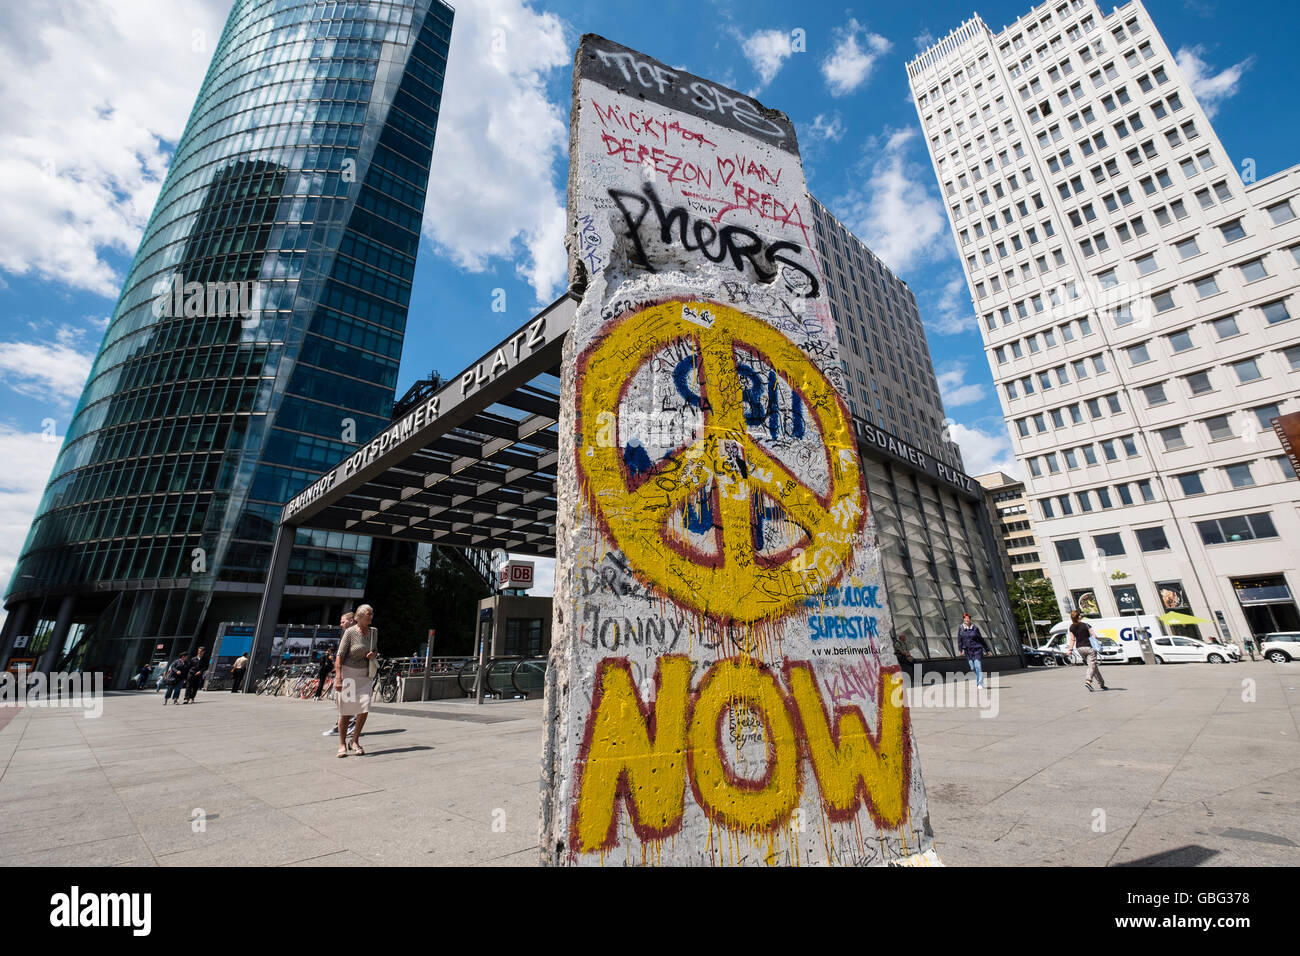 L'article de l'ancien mur de Berlin avec des graffitis au Potsdamer Platz à Berlin Allemagne Banque D'Images